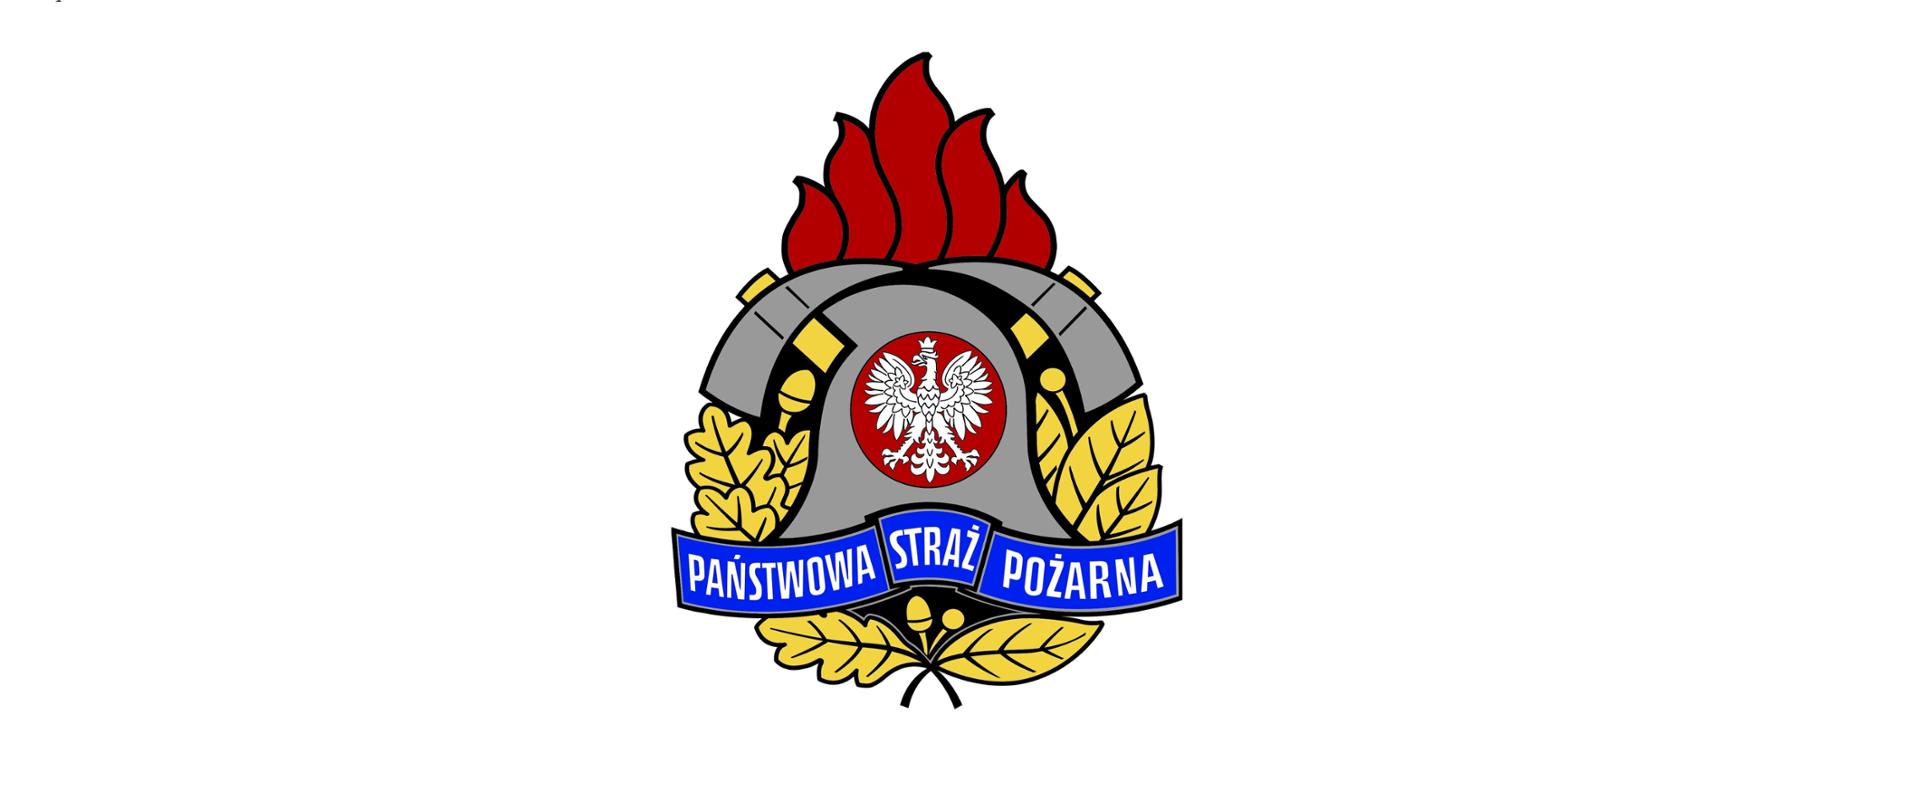 Zdjęcie przedstawia logo państwowej straży pożarnej, hełm strażacki i dwa toporki, otoczone płomieniem od góry i liśćmi dębu i wawrzynu z boków